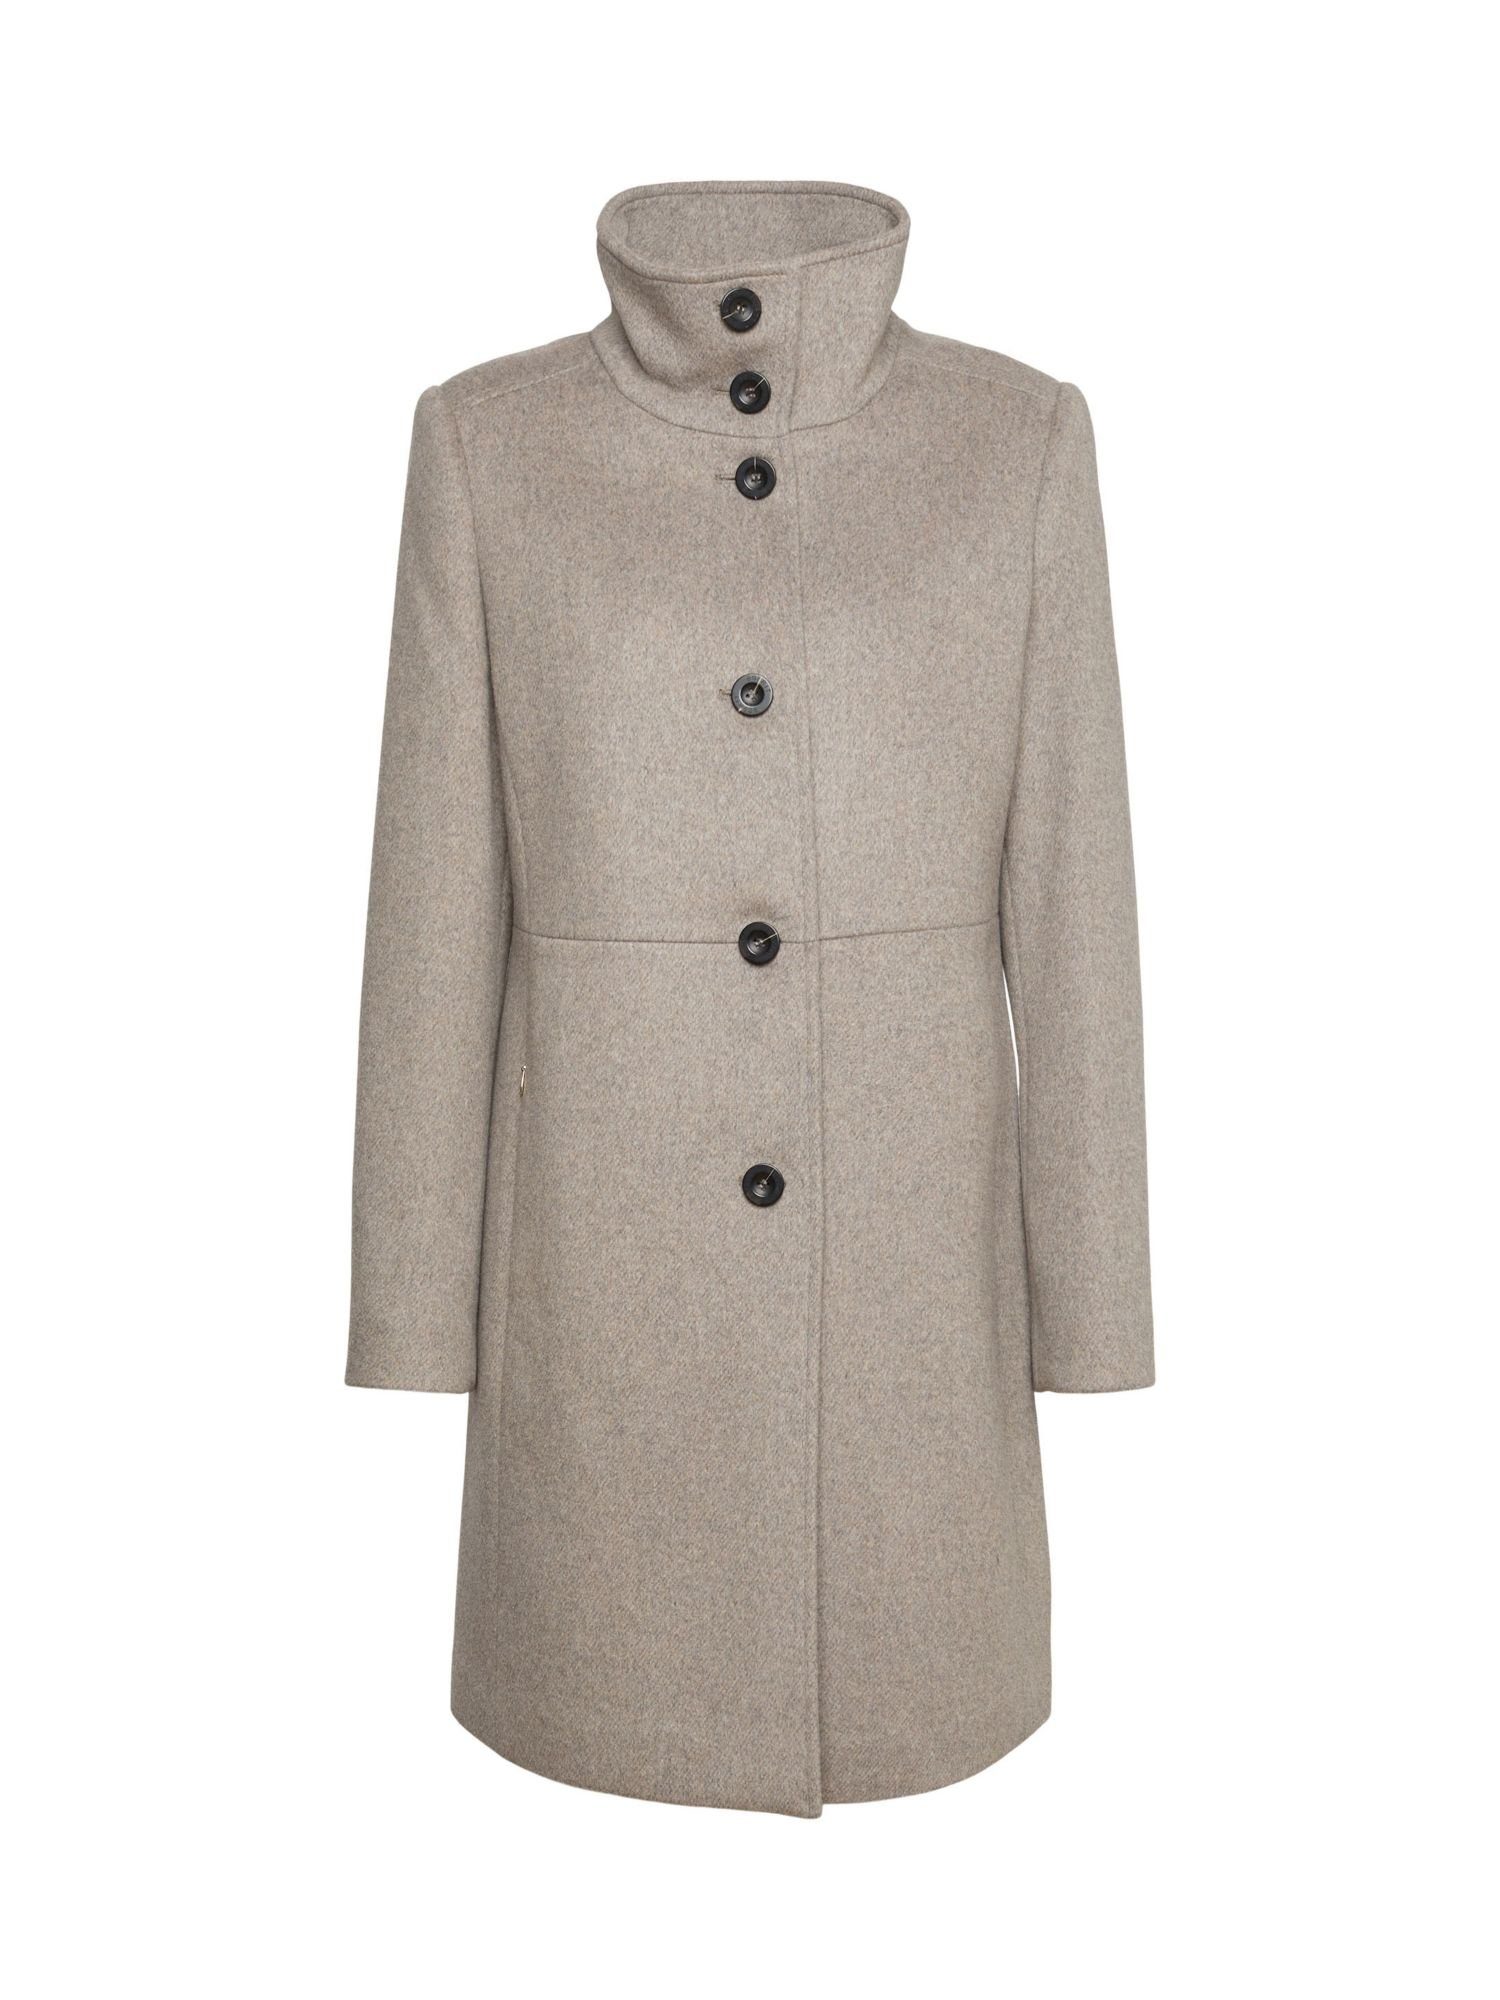 Esprit Collection Wollmantel Mantel aus weich angerauter Wolle